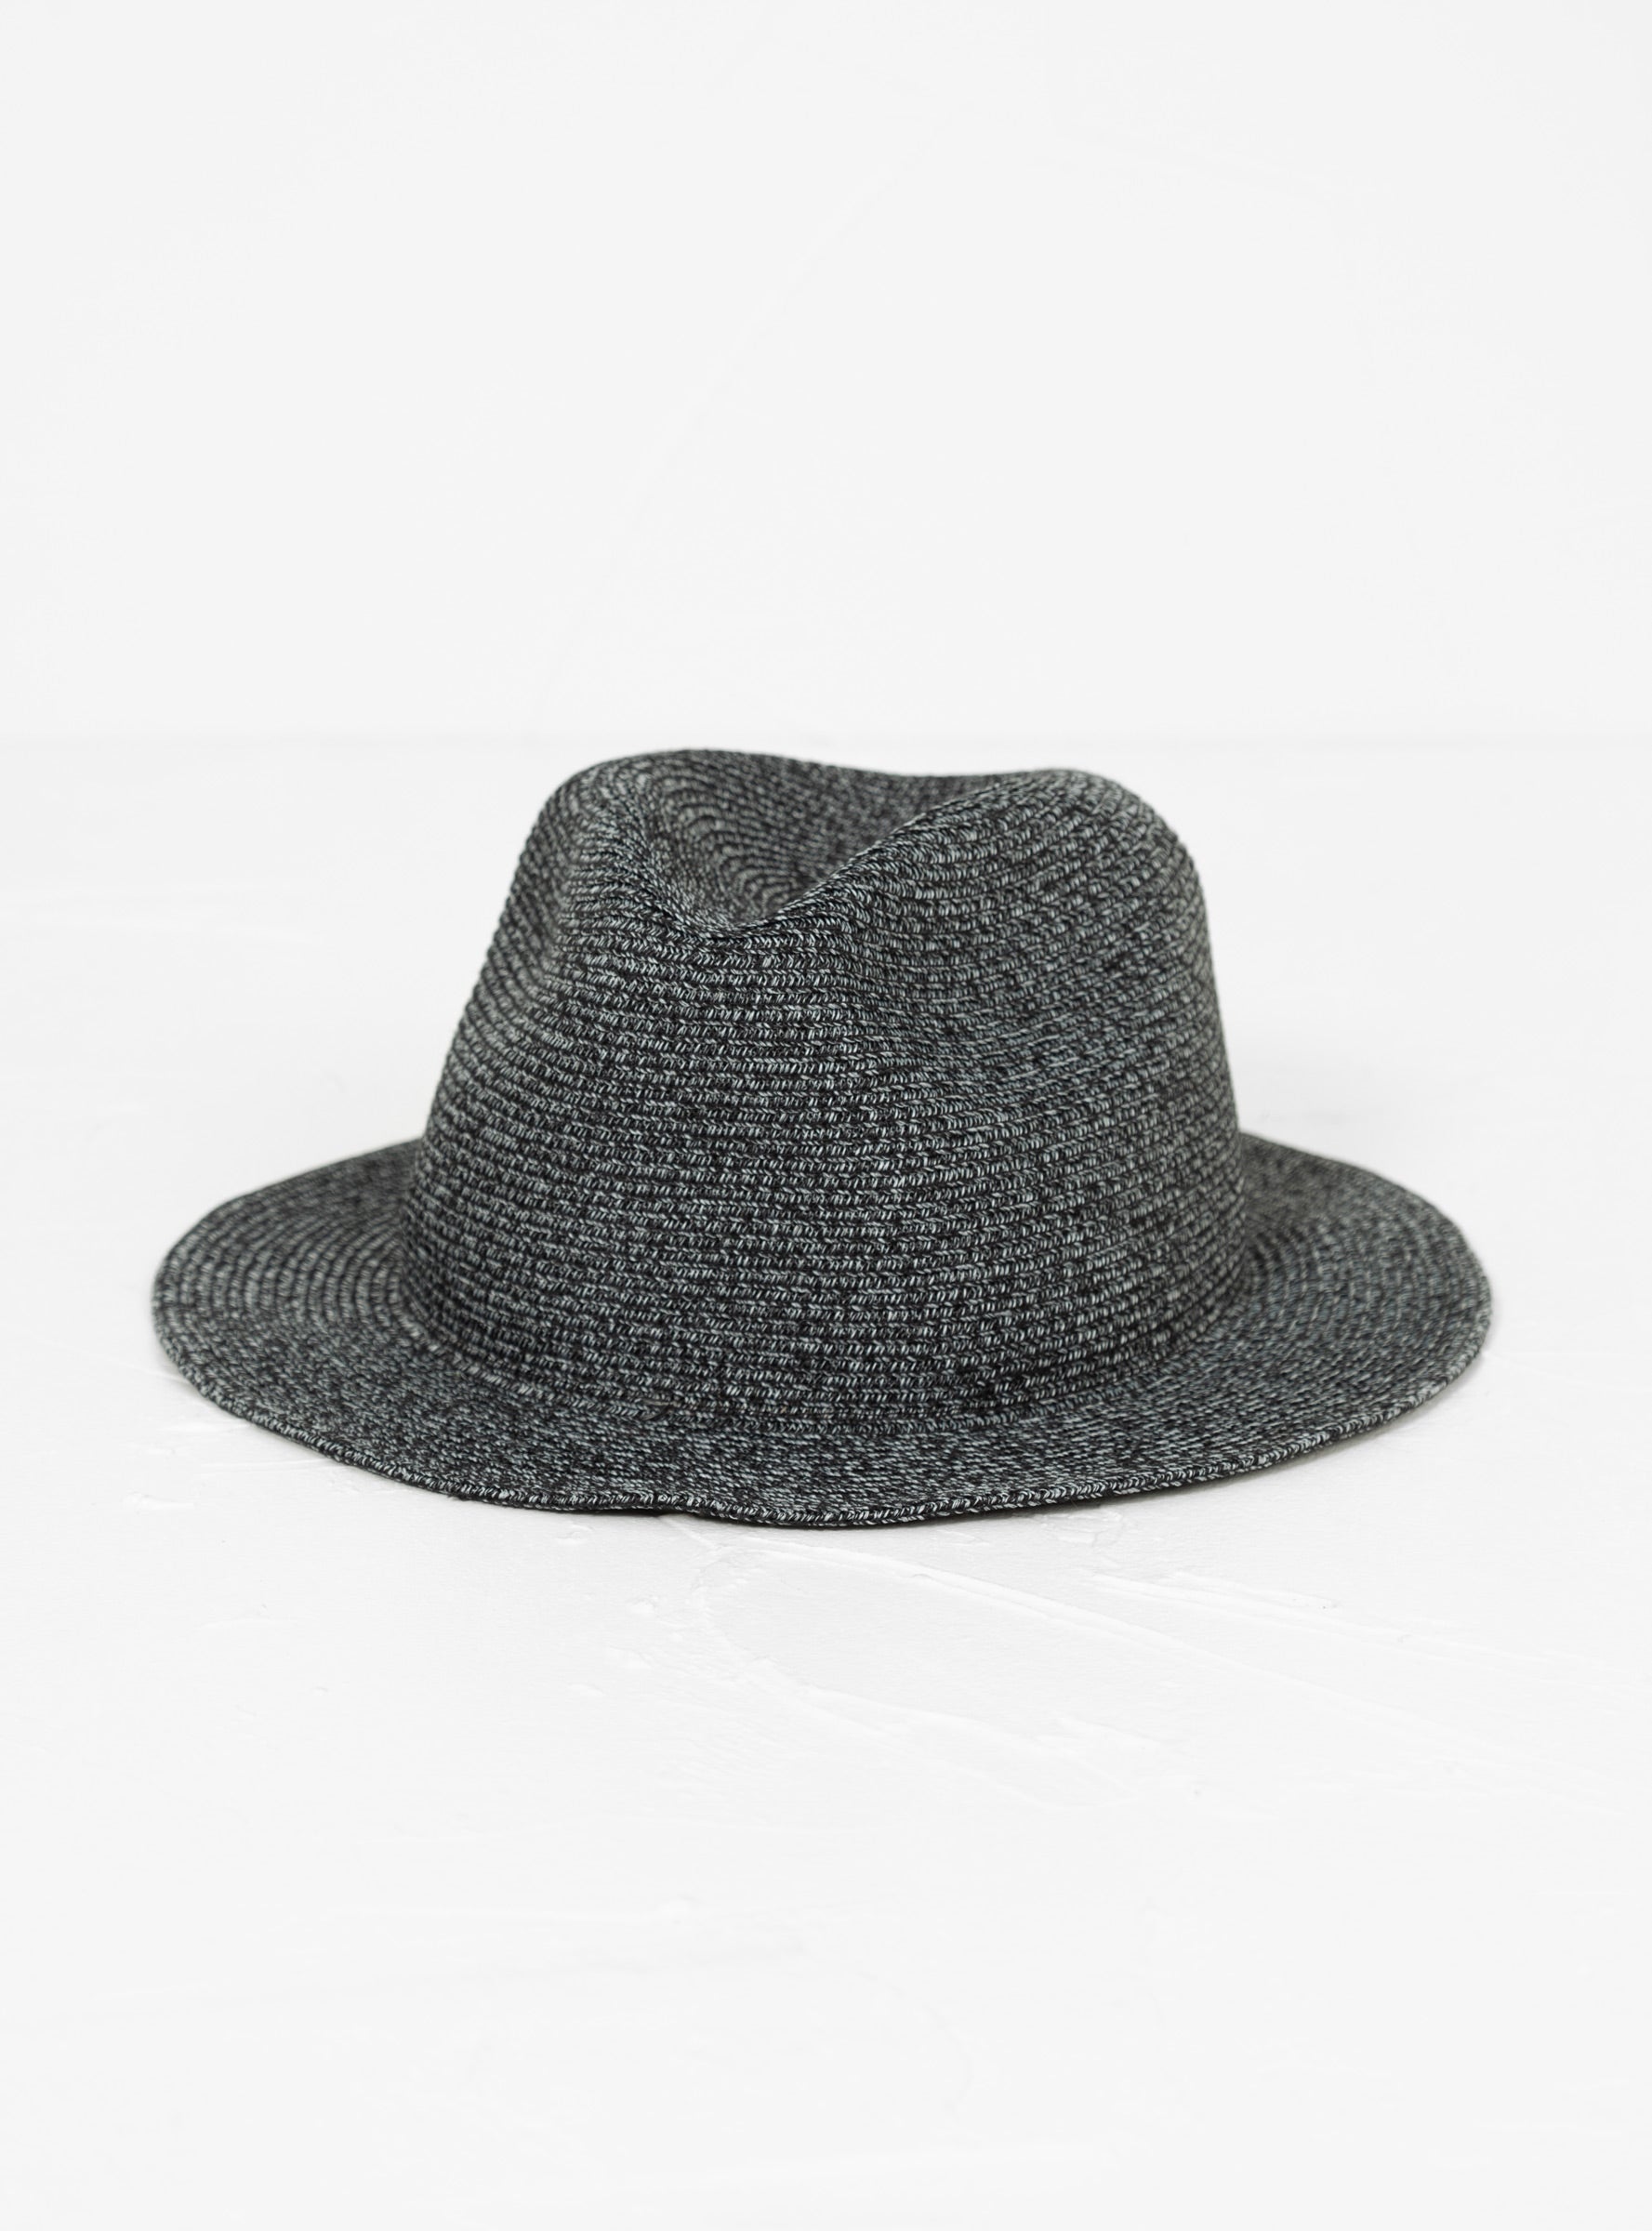  Sublime Packable Travel Hat Black